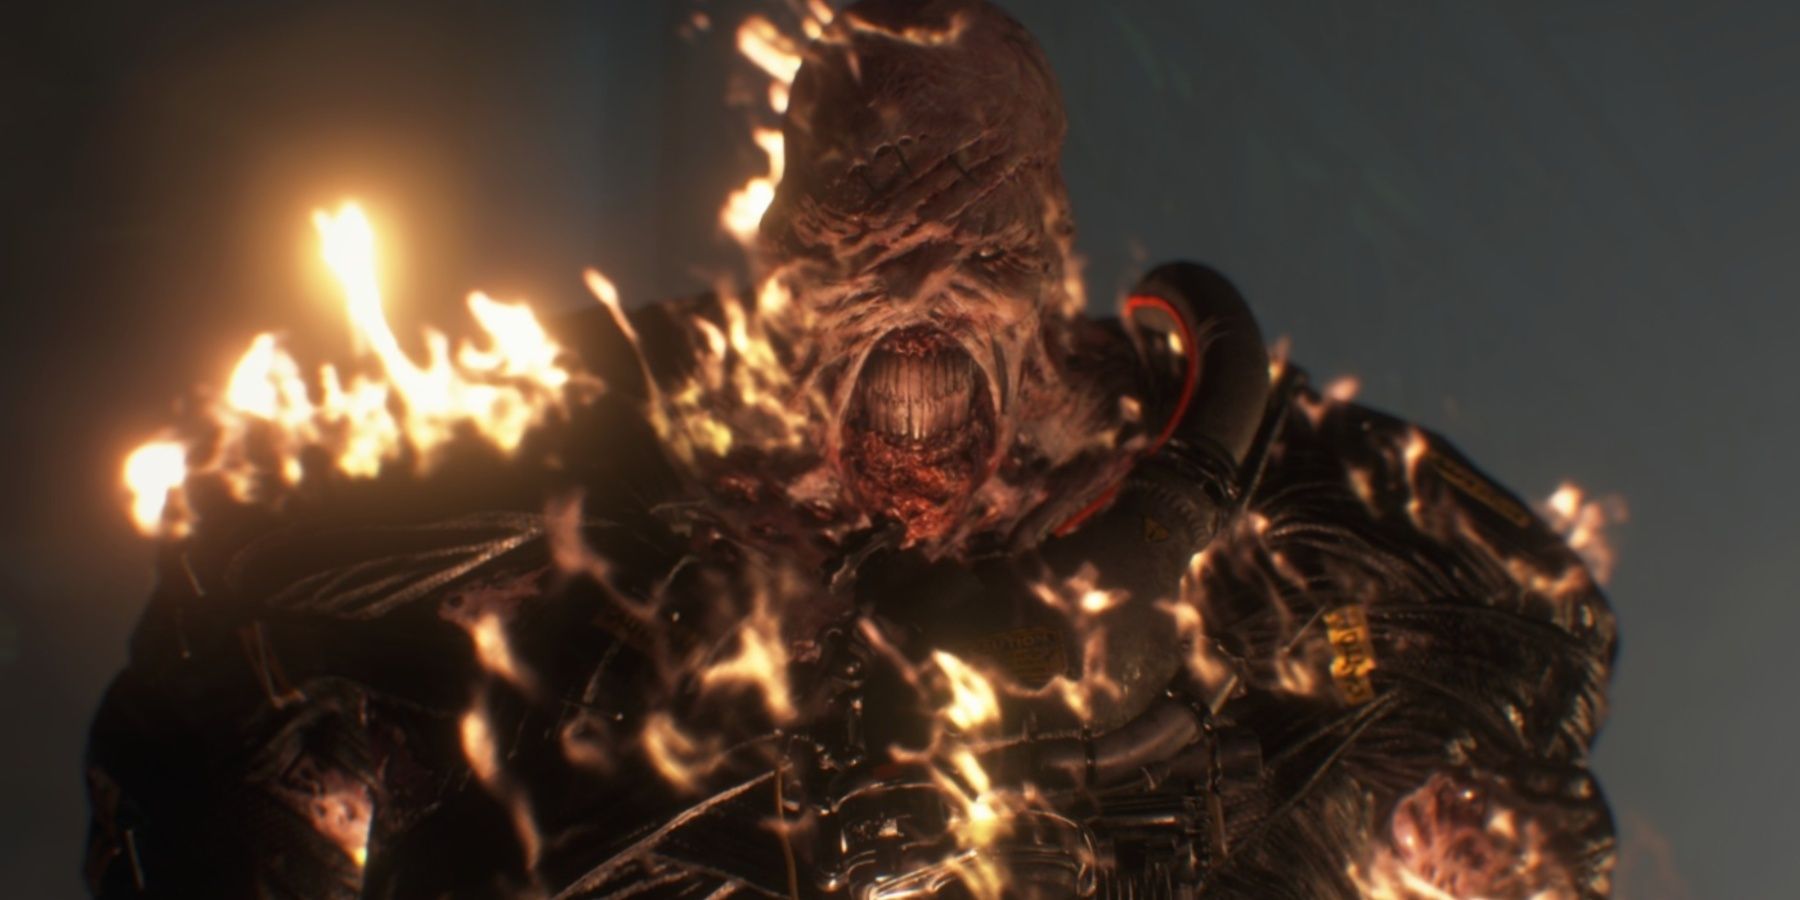 Nemesis on fire in Resident Evil 3